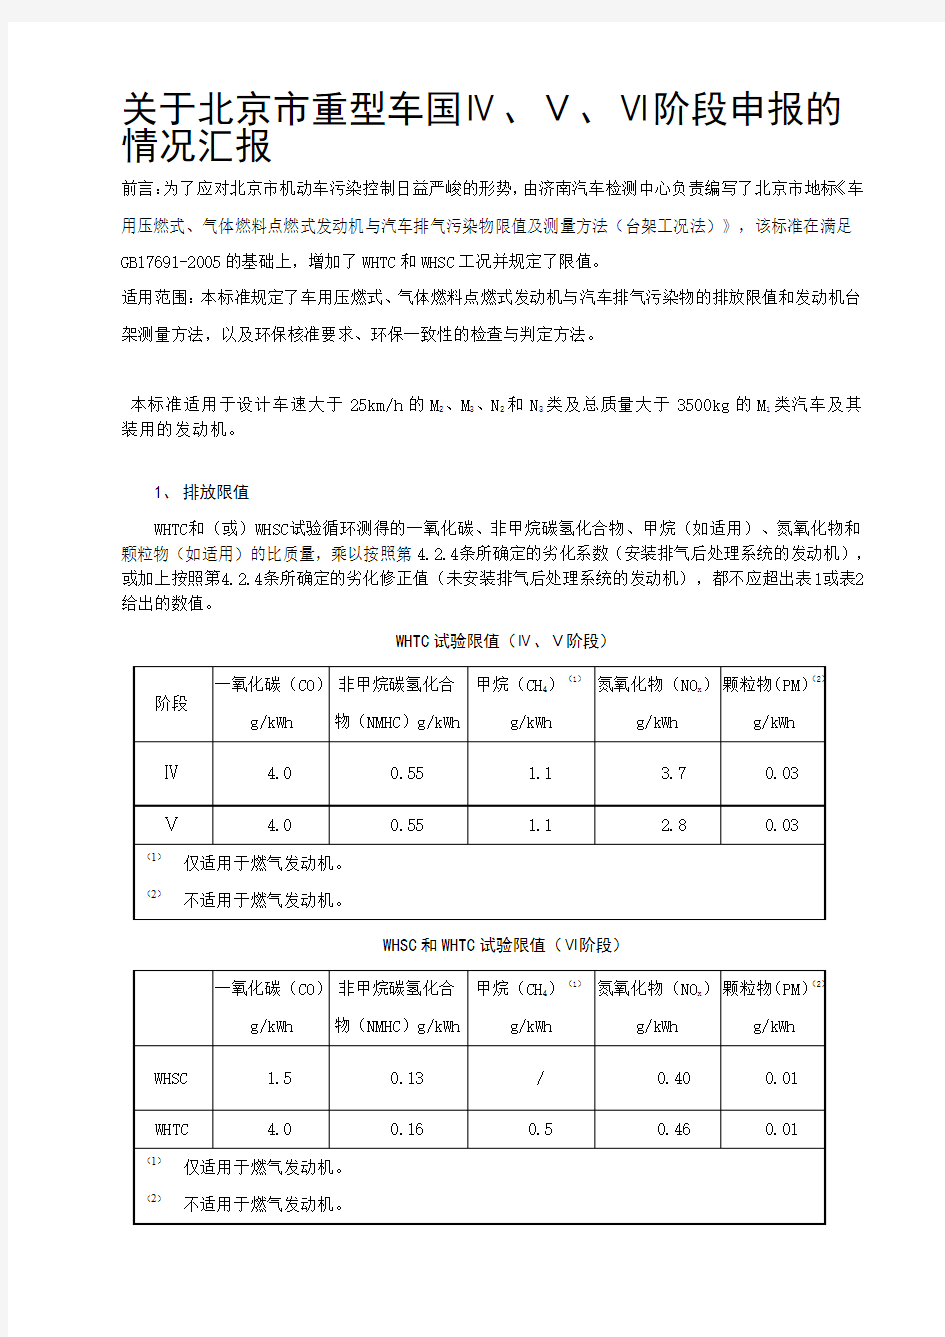 关于北京市重型车国4、5、6阶段的申报要求